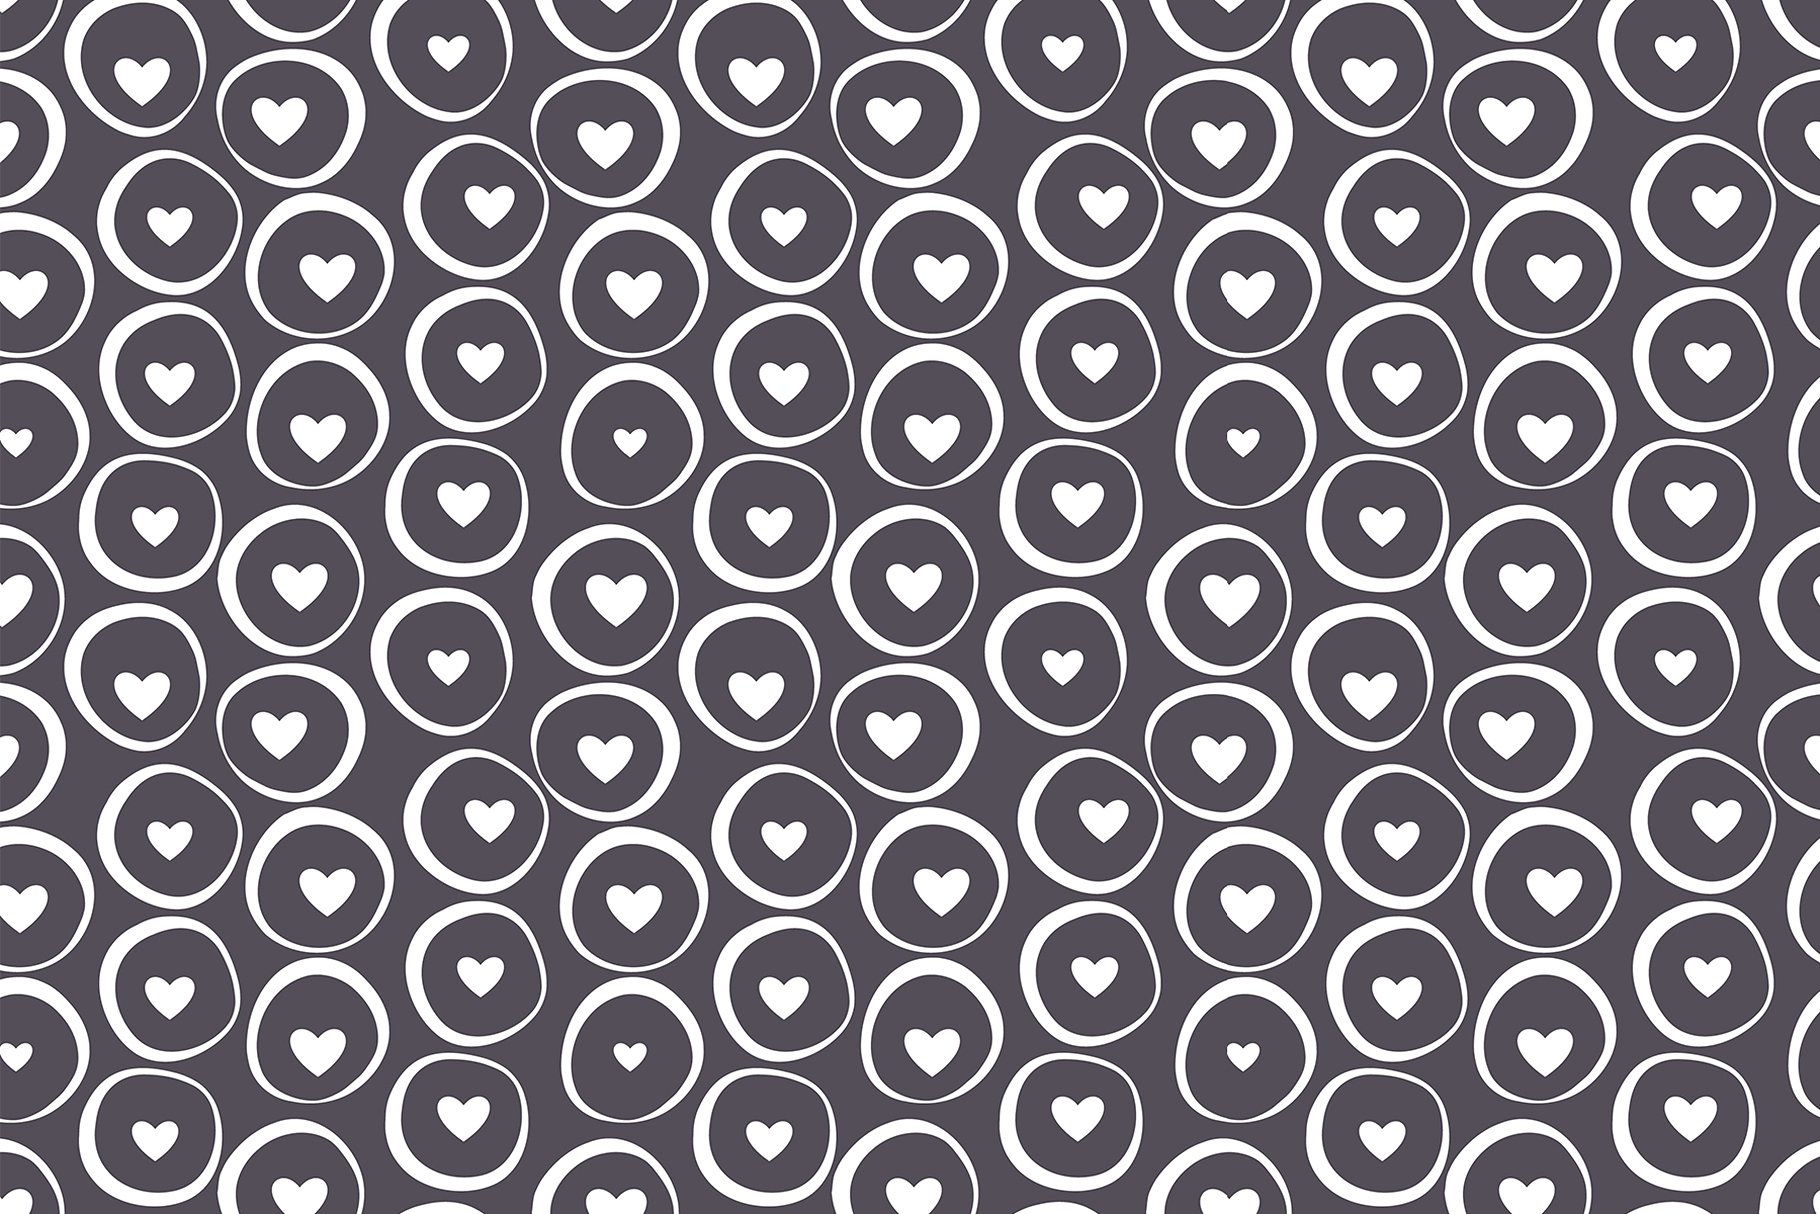 心形无缝纹理集 Hearts Seamless Patterns Set插图3